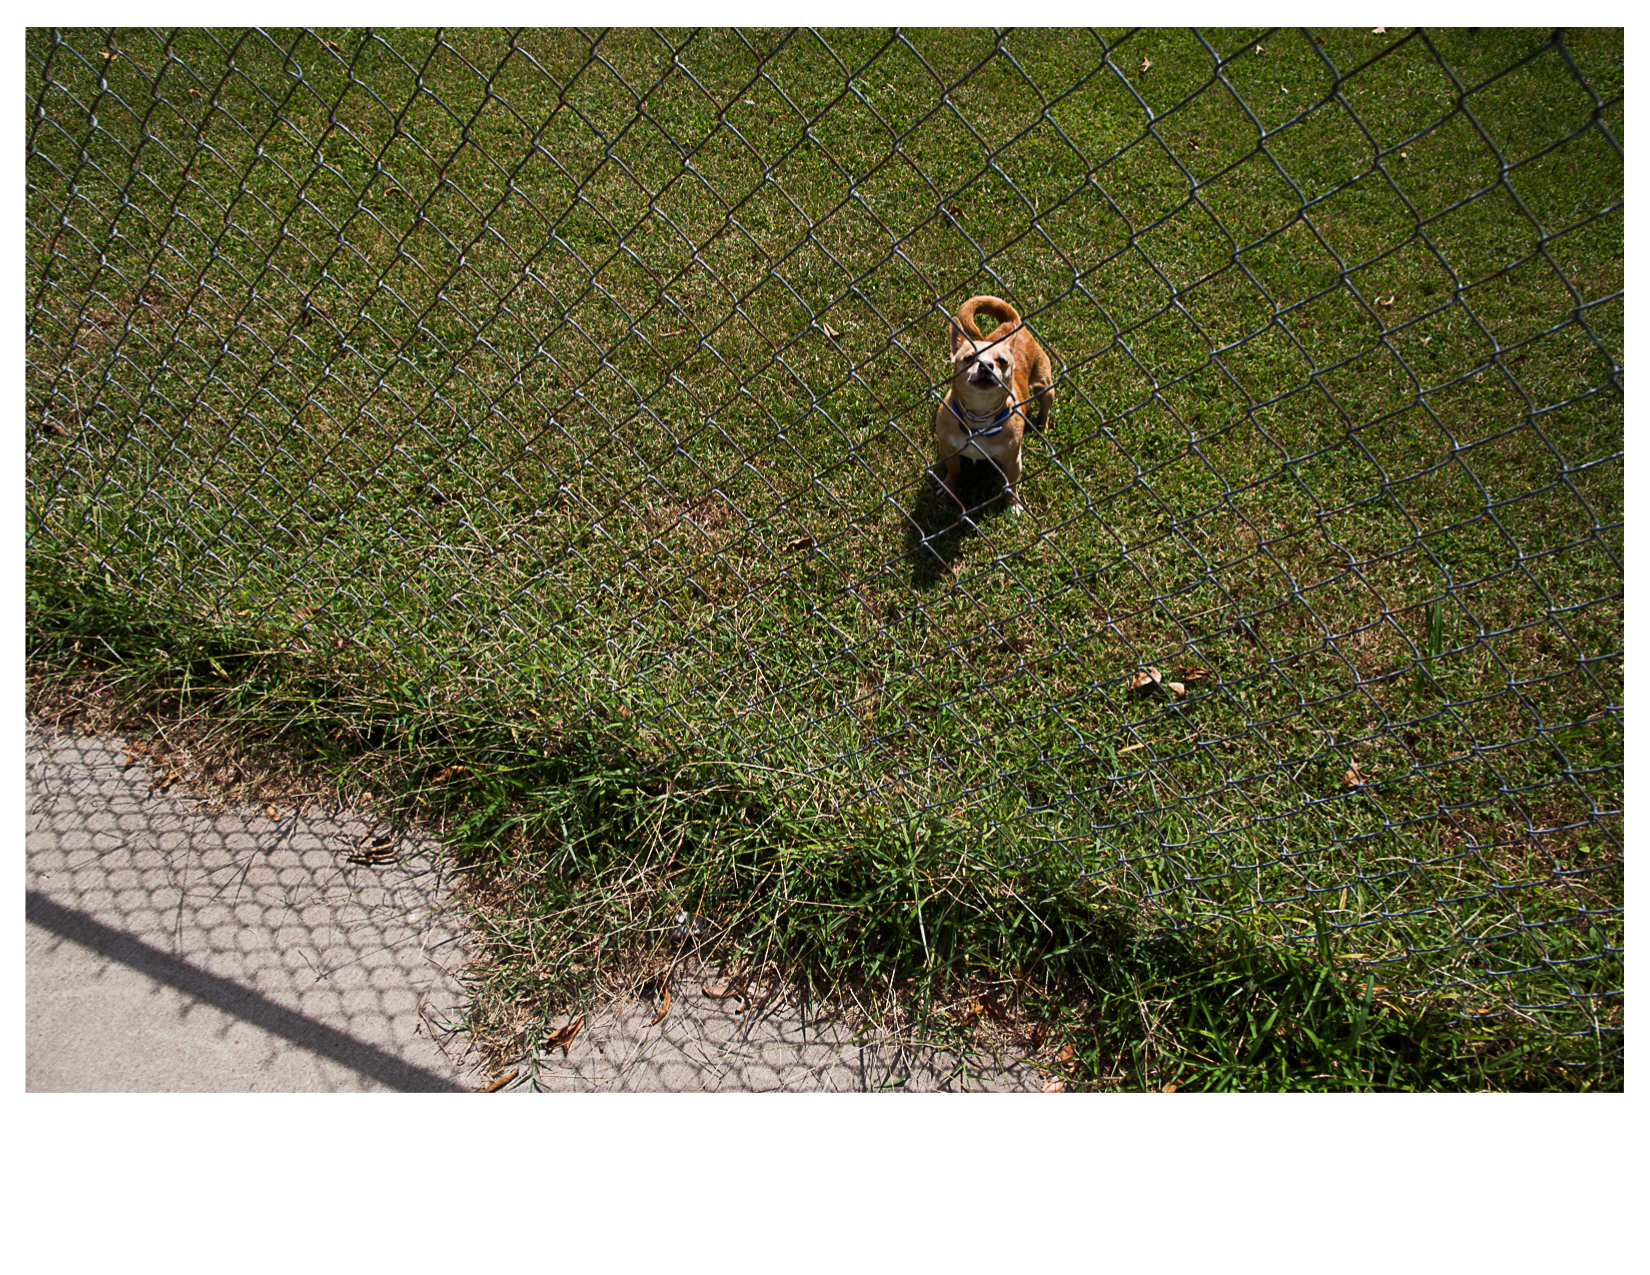 Dog in Yard, North 17th Street, Fort Smith, AR